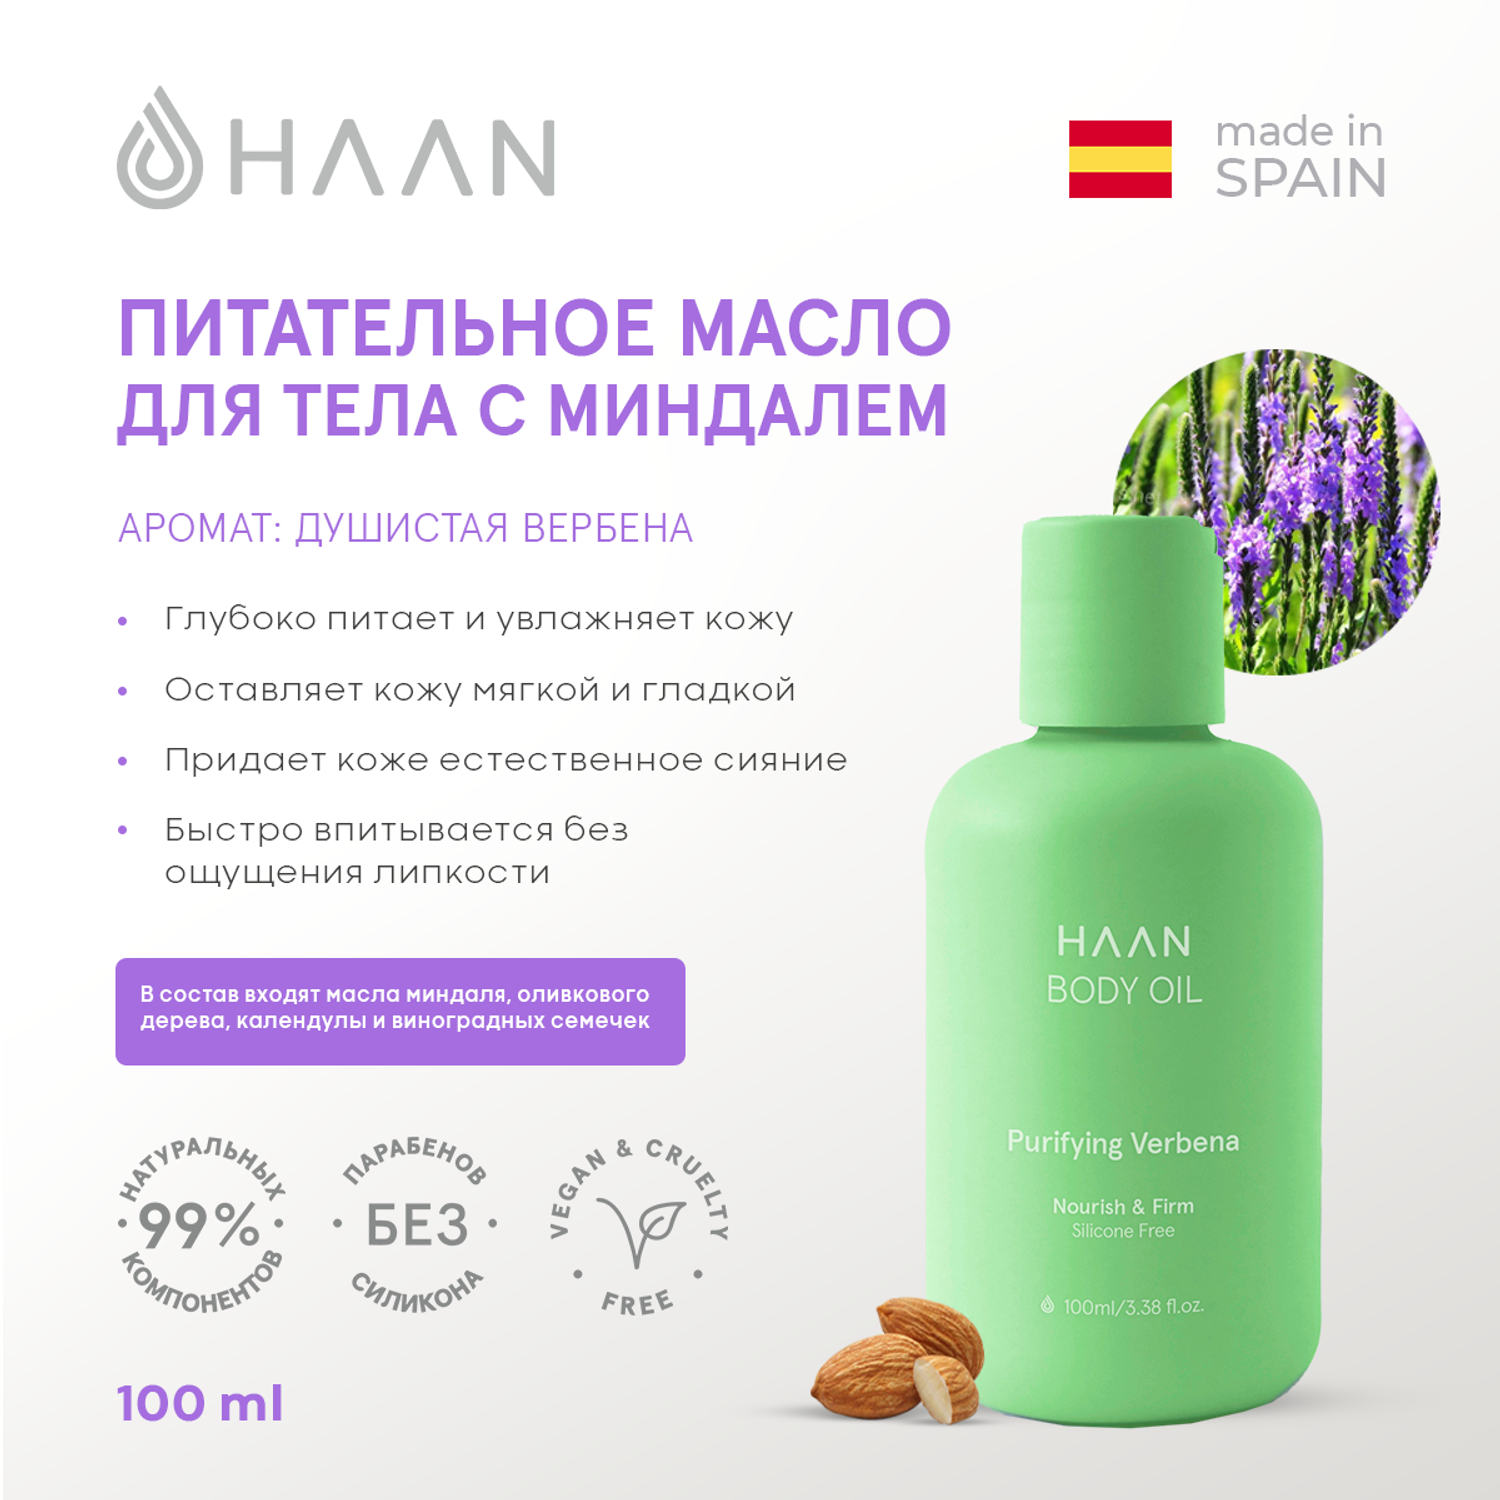 Питательное масло HAAN для тела с Миндалем Душистая вербена 100 мл - фото 2